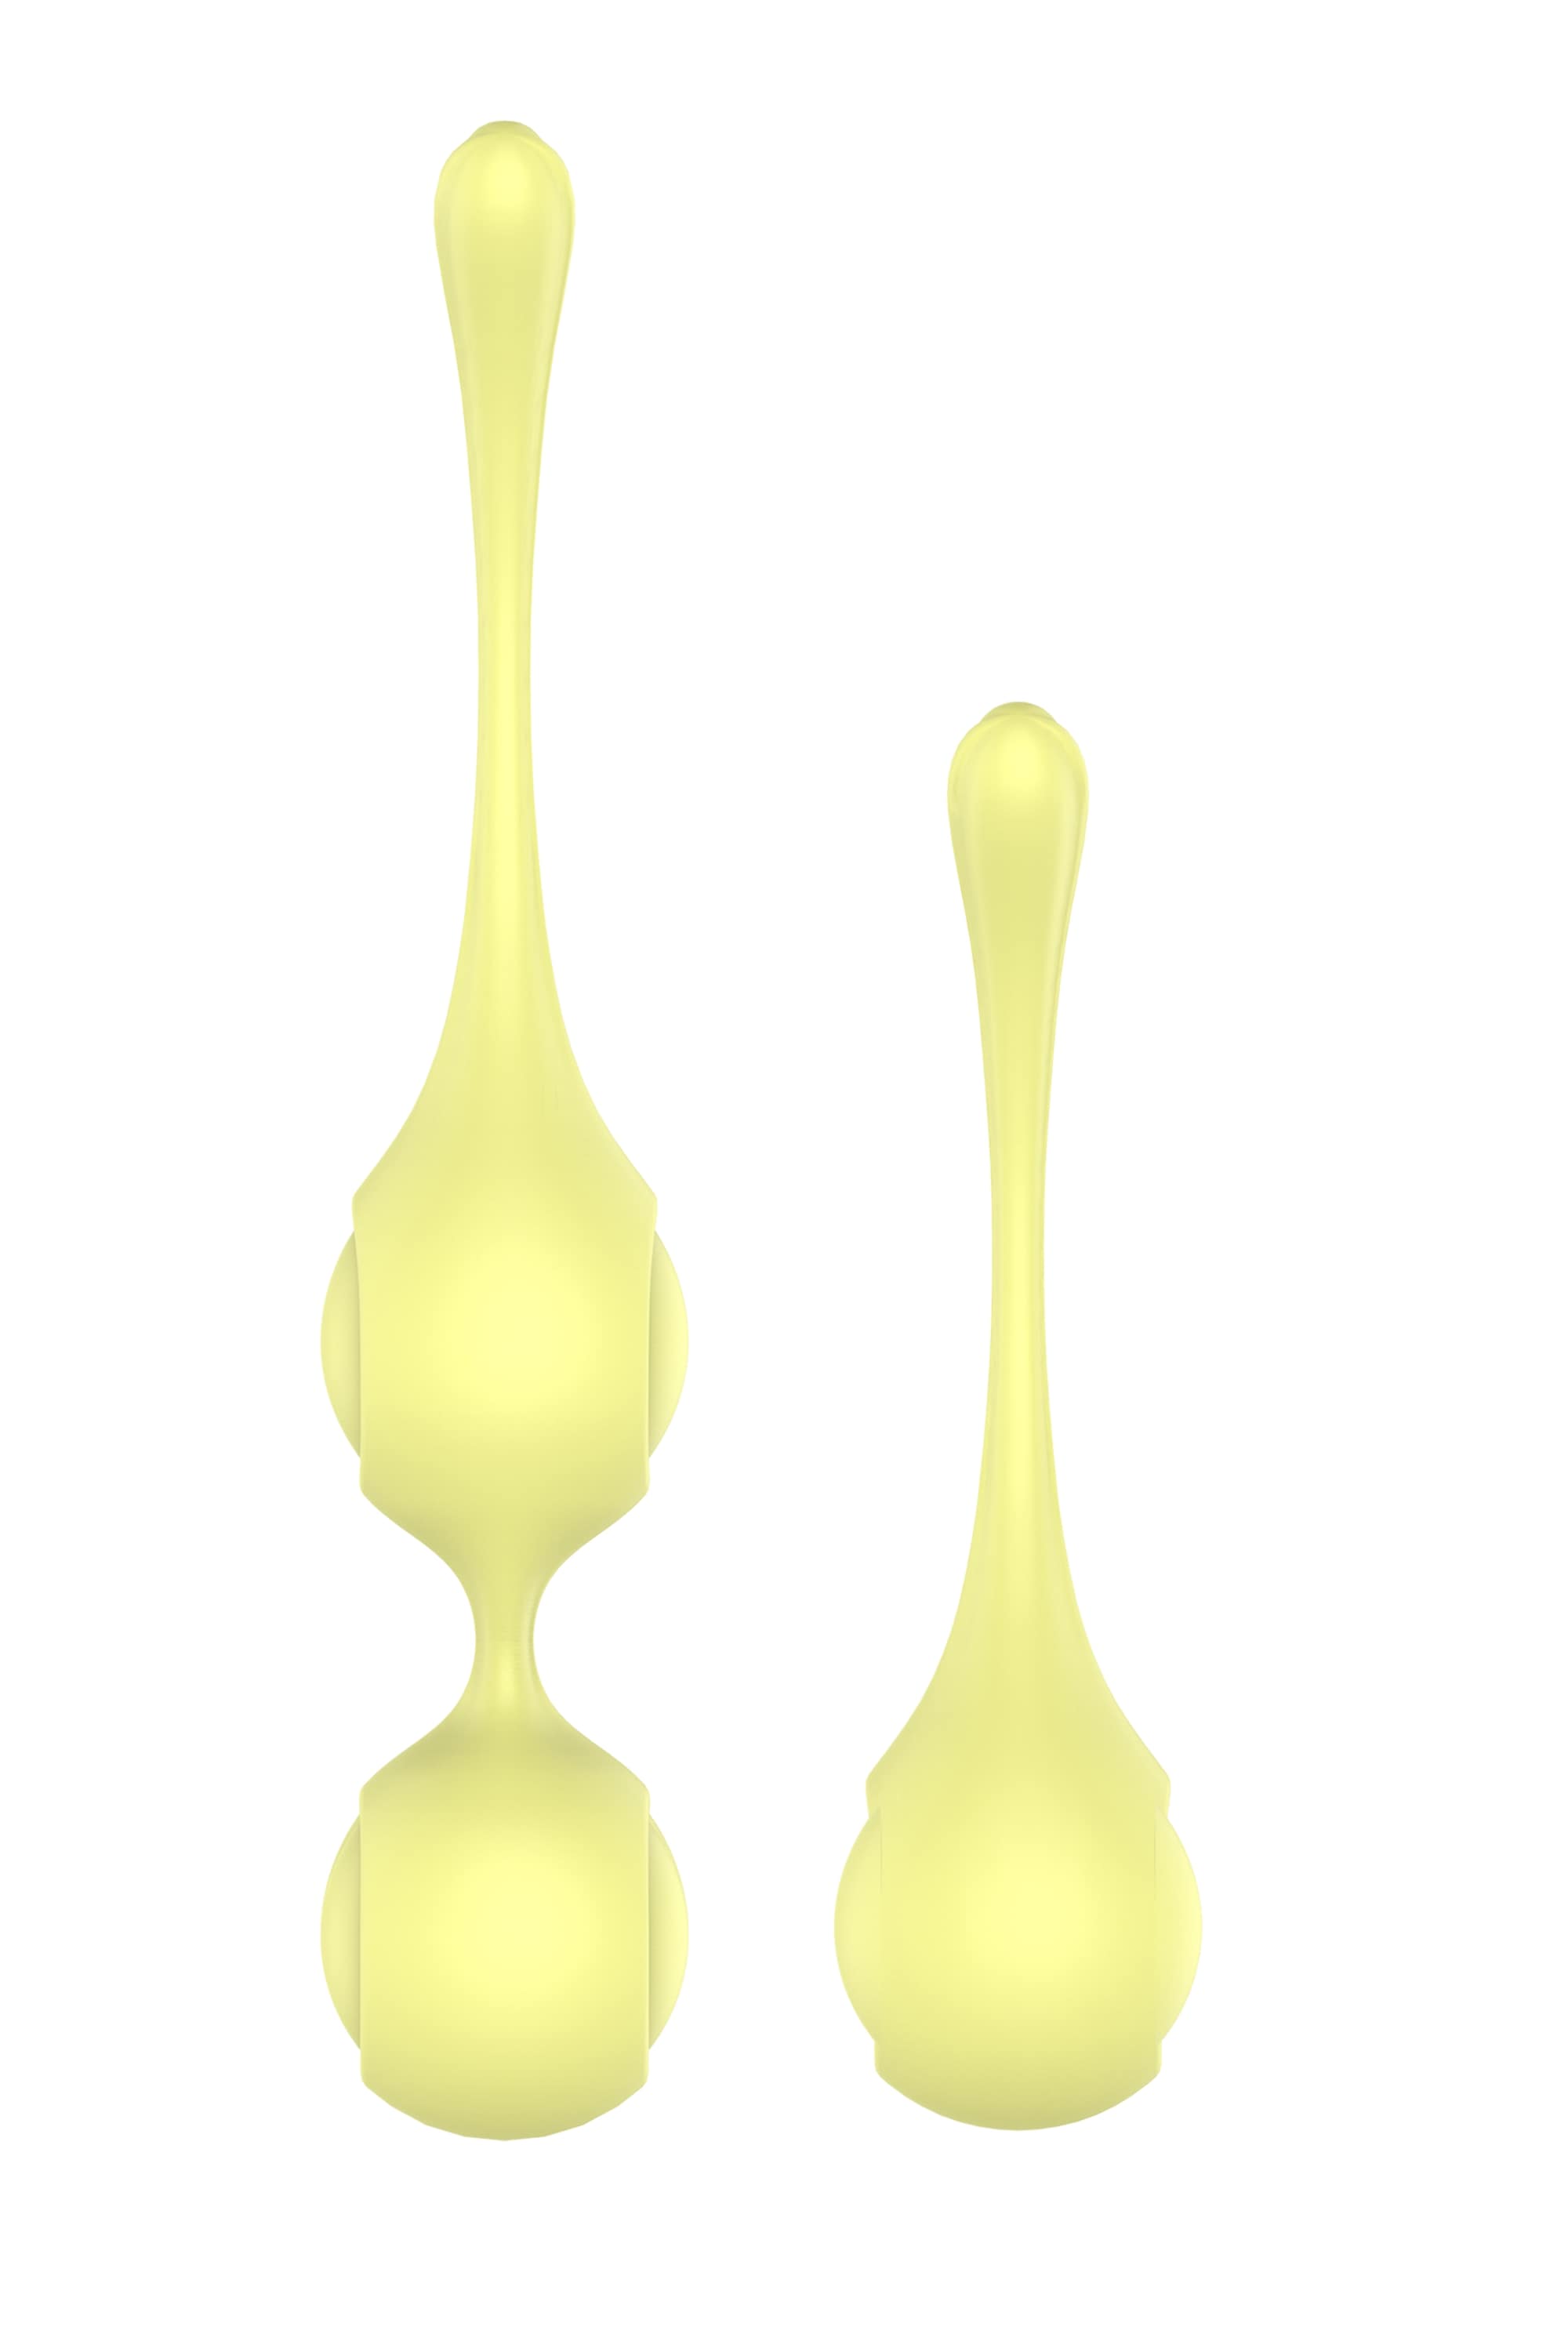 The Candy Shop - variálható gésagolyó szett (sárga) Kéjgolyók, tojás vibrátorok kép